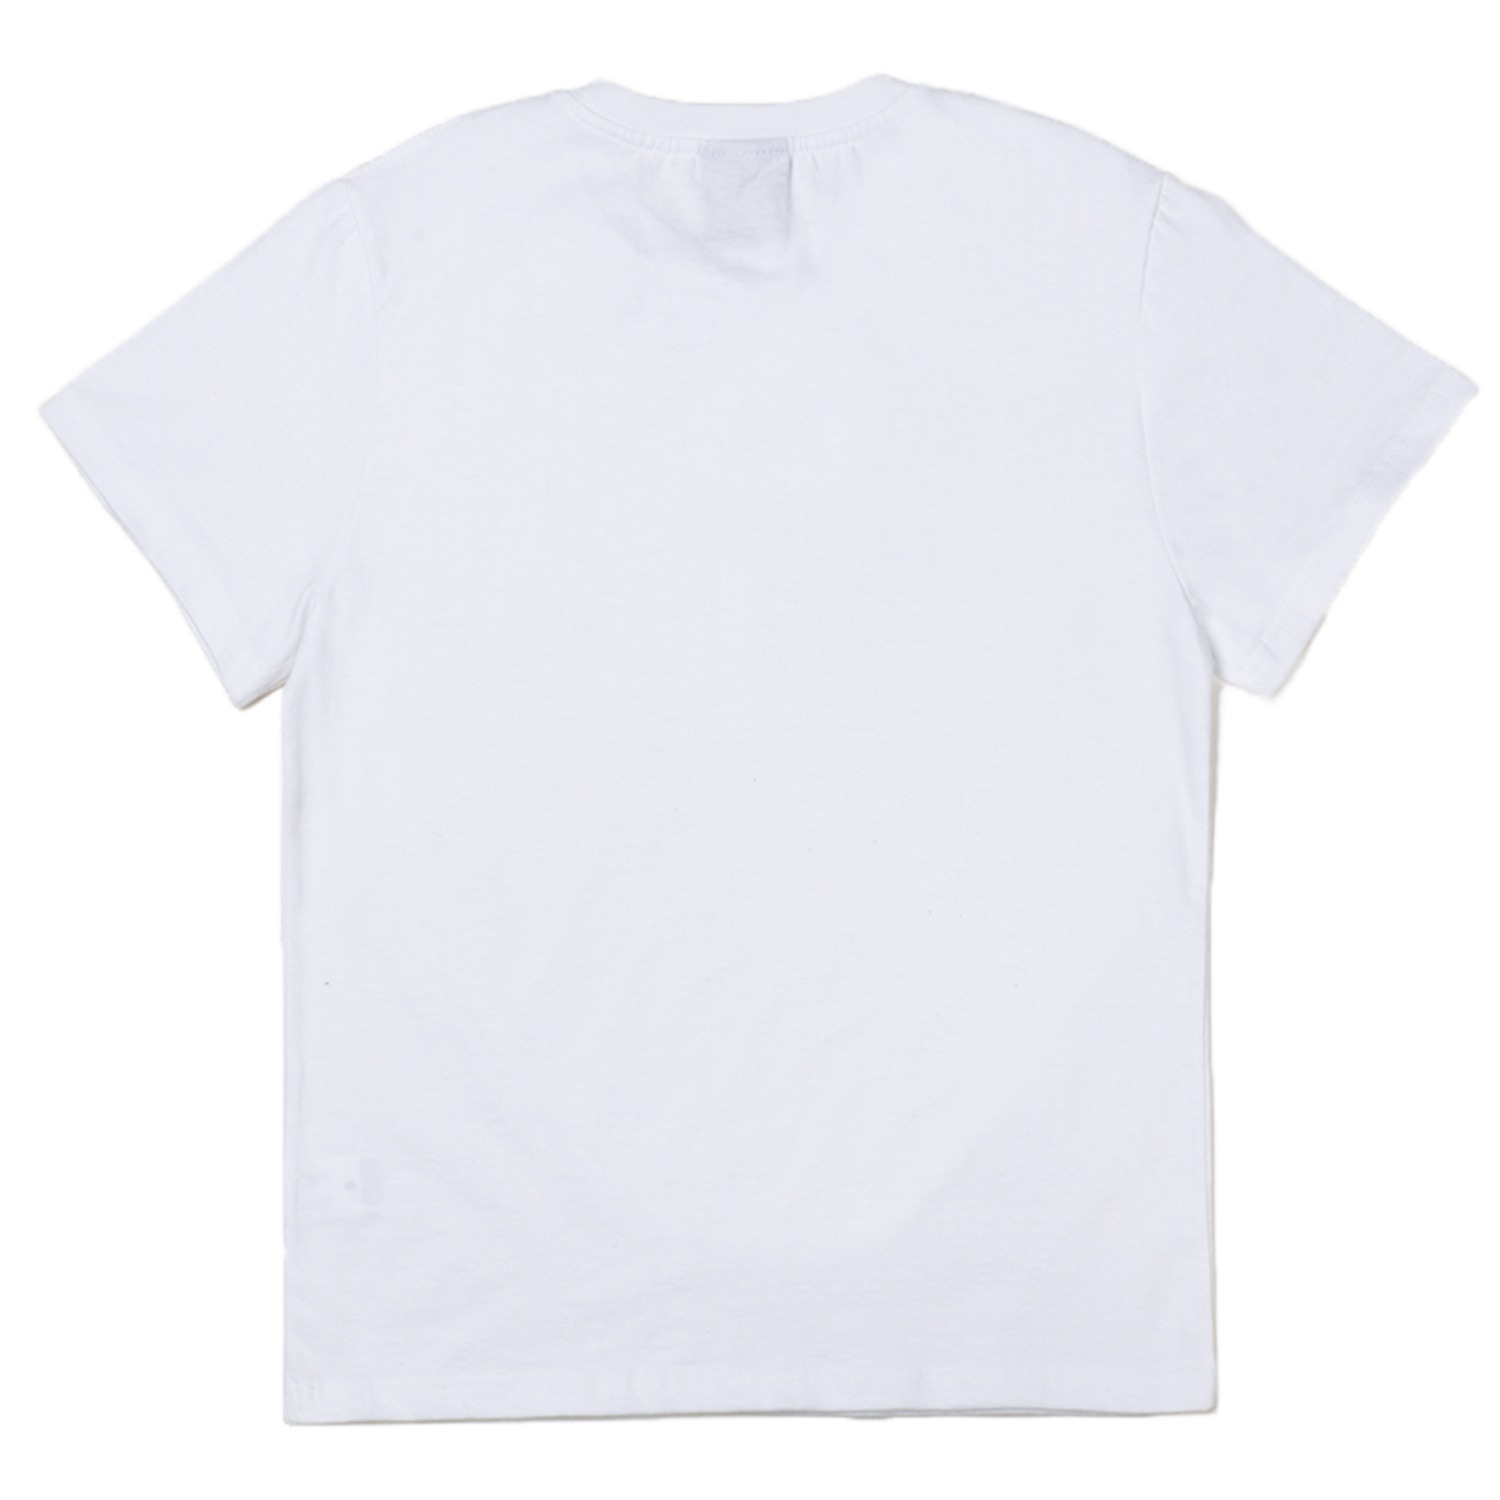 응웅엉 반팔 티셔츠YES Korean SS tshirt (White)